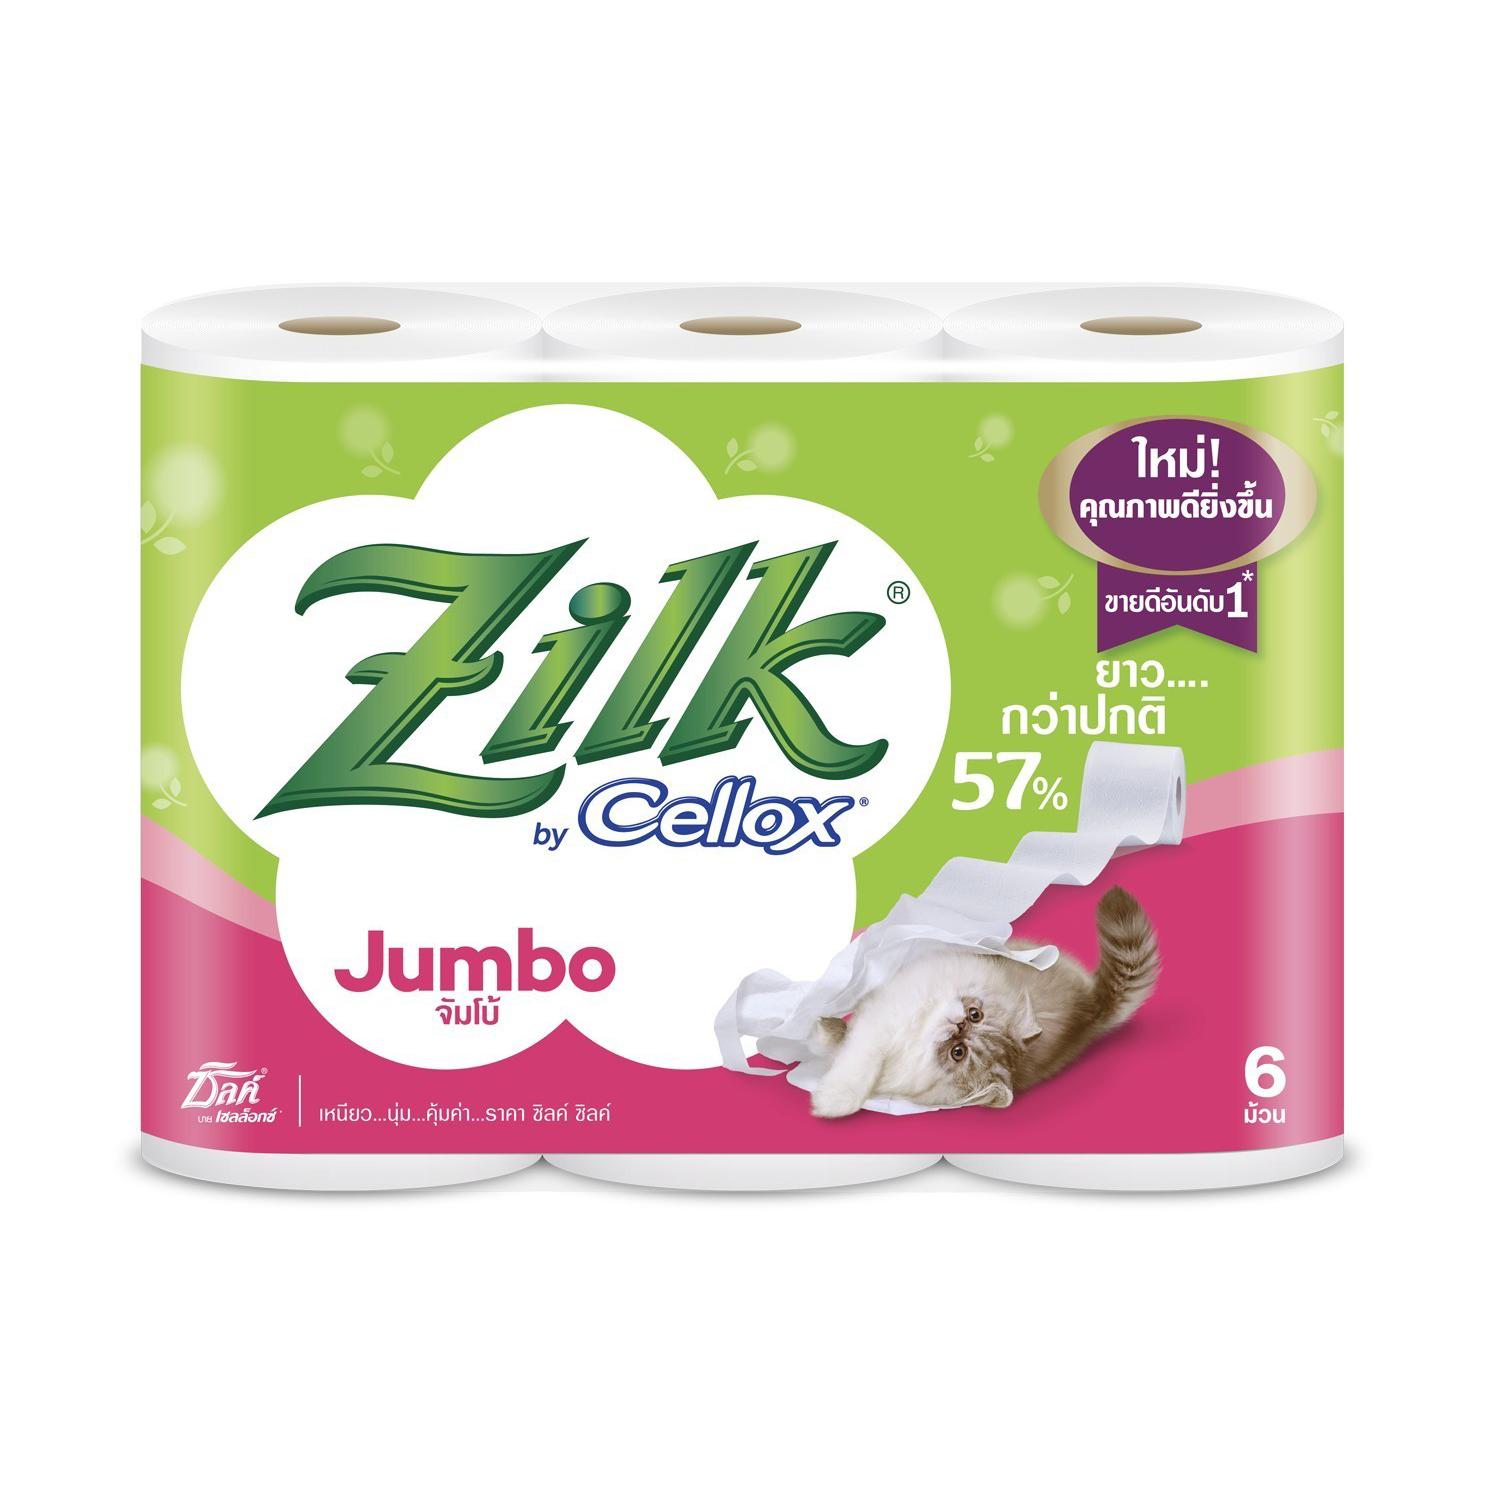 ❤️จัดส่งพรุ่งนี้❤️ Zilk กระดาษทิชชู ซิลค์ จัมโบ้ 6 ม้วน Zilk Jumbo 6 rolls ❤️999-2020-50❤️ ❤️โปรโมชั่นสุดคุ้ม โค้งสุดท้าย❤️